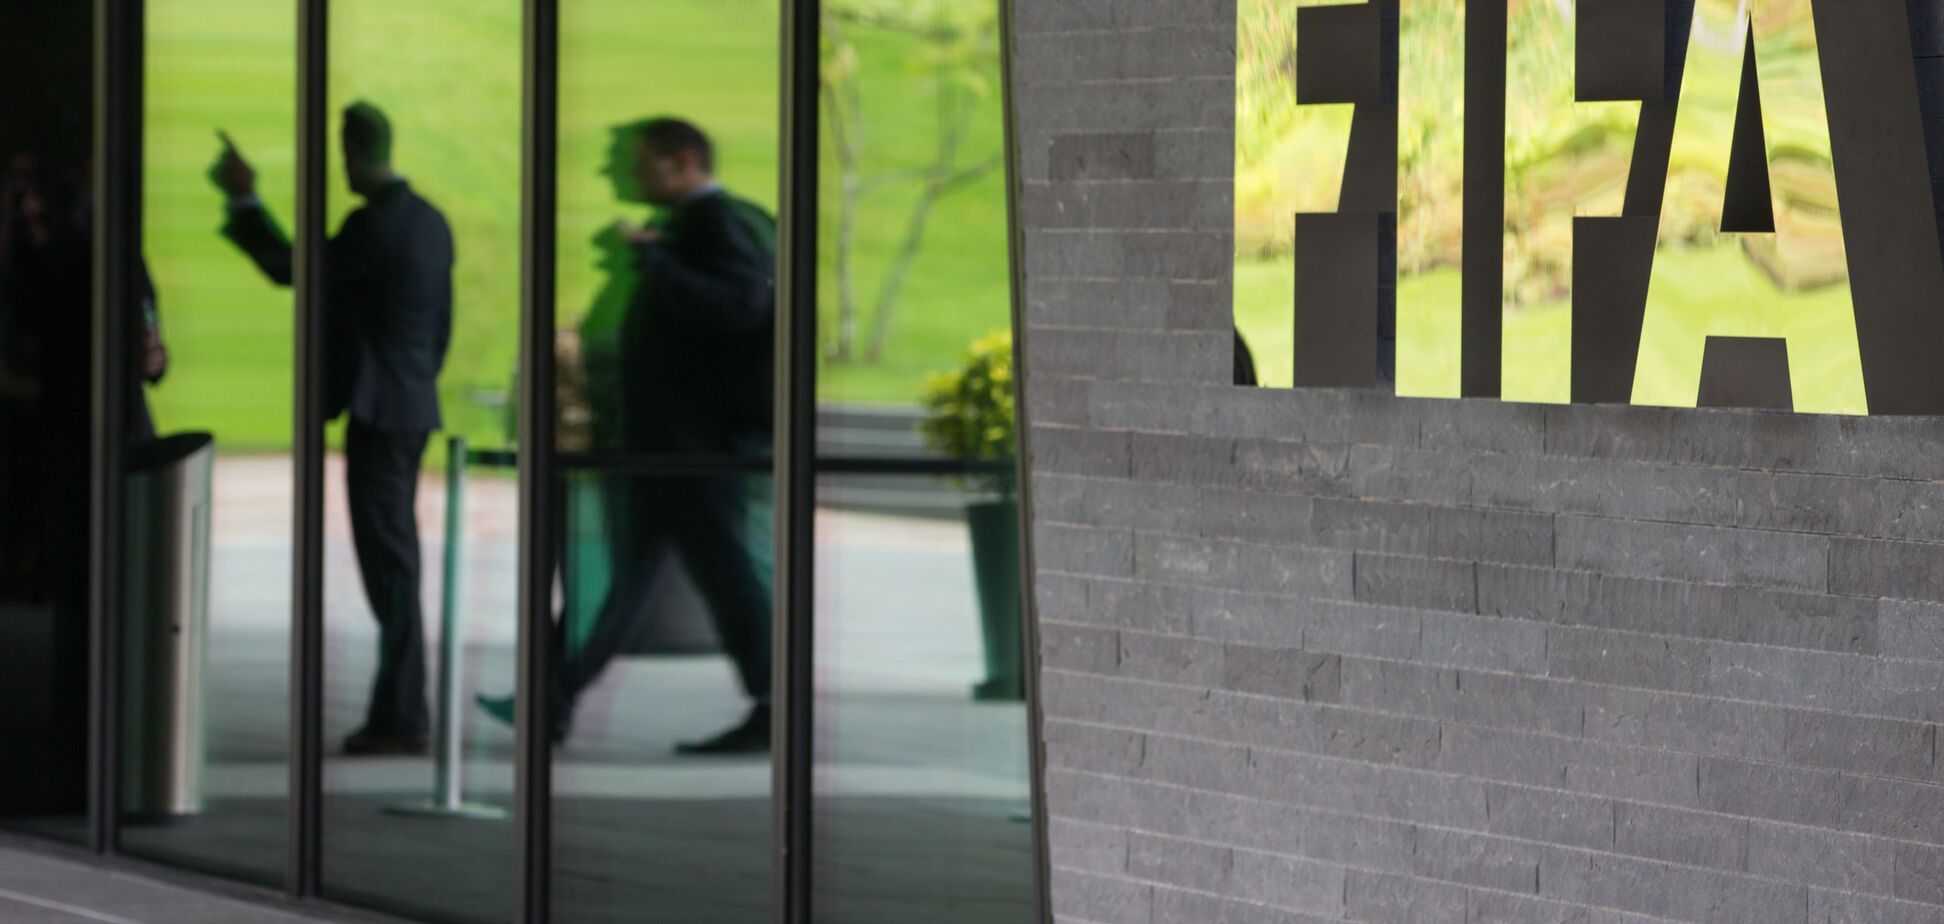 ФІФА відреагувала на обвал рейтингу у Facebook через Україну